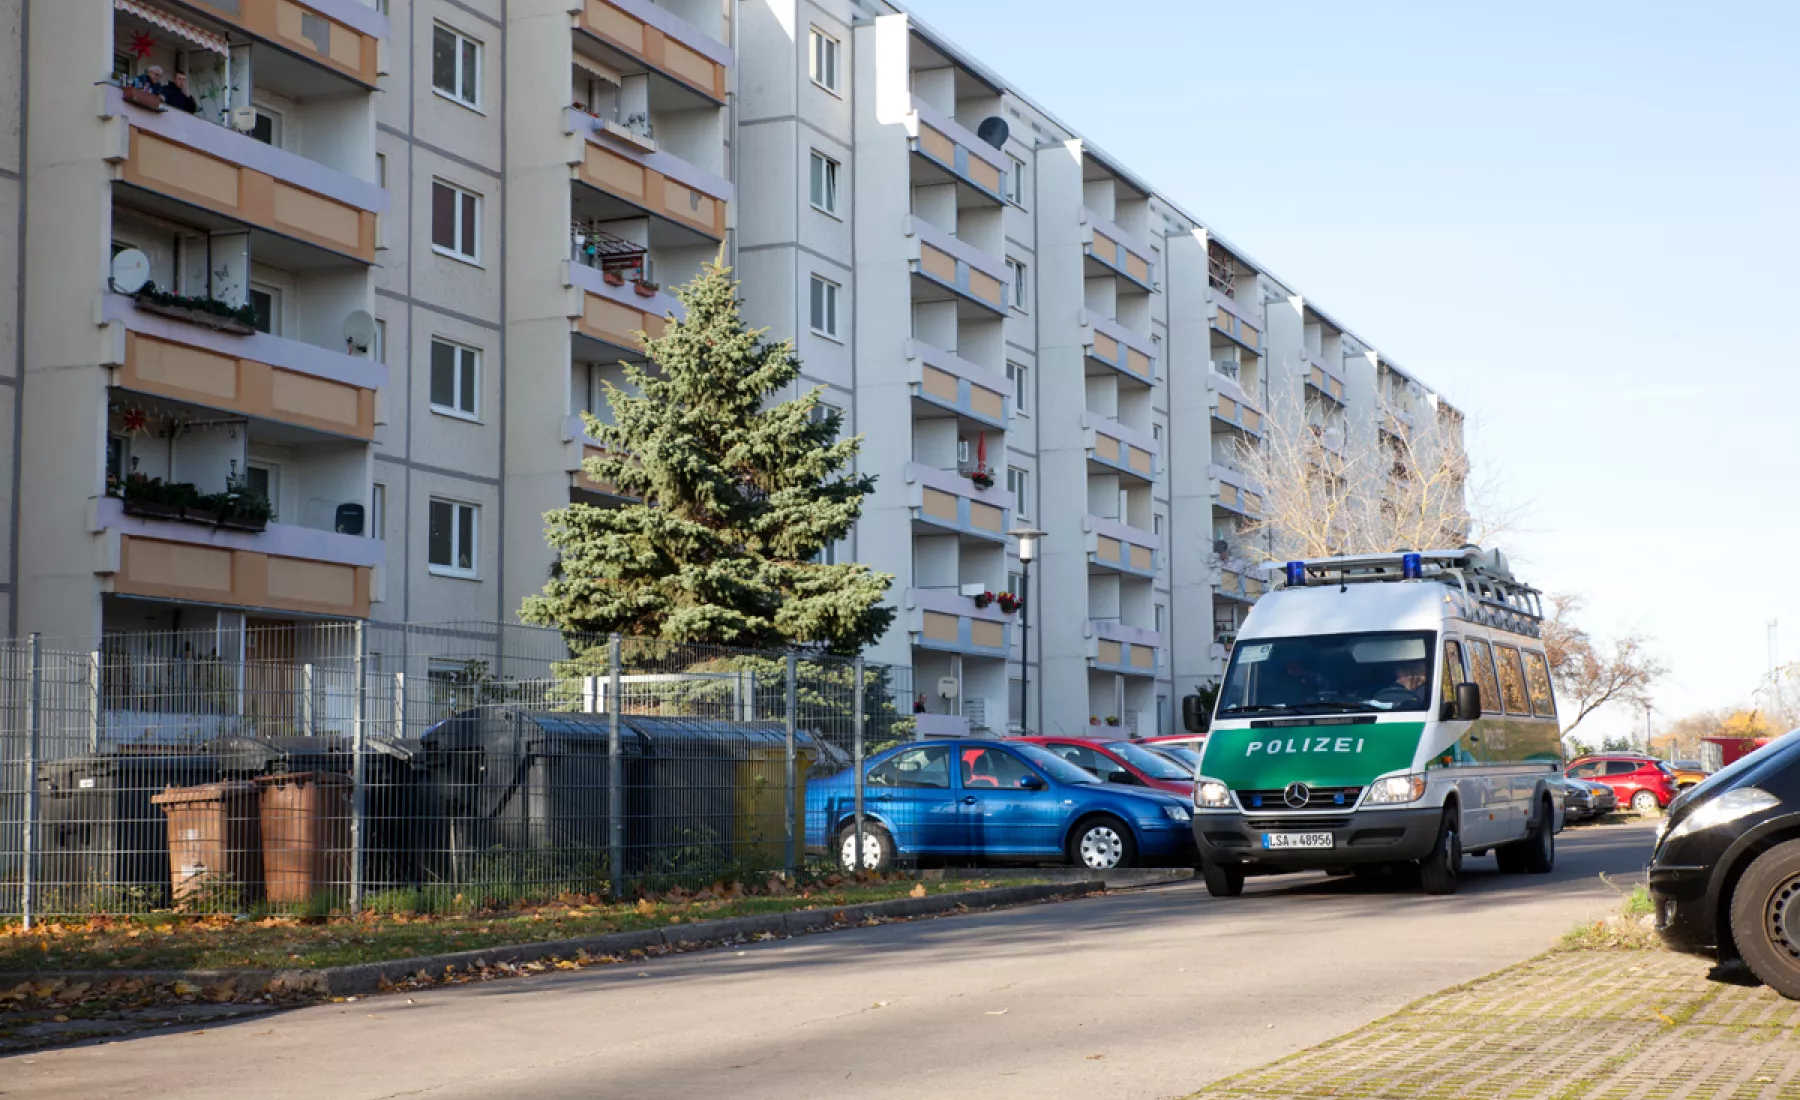 Symbolbild: Polizei sperrt in Halle Straßen wegen Bombenfund im November 2020